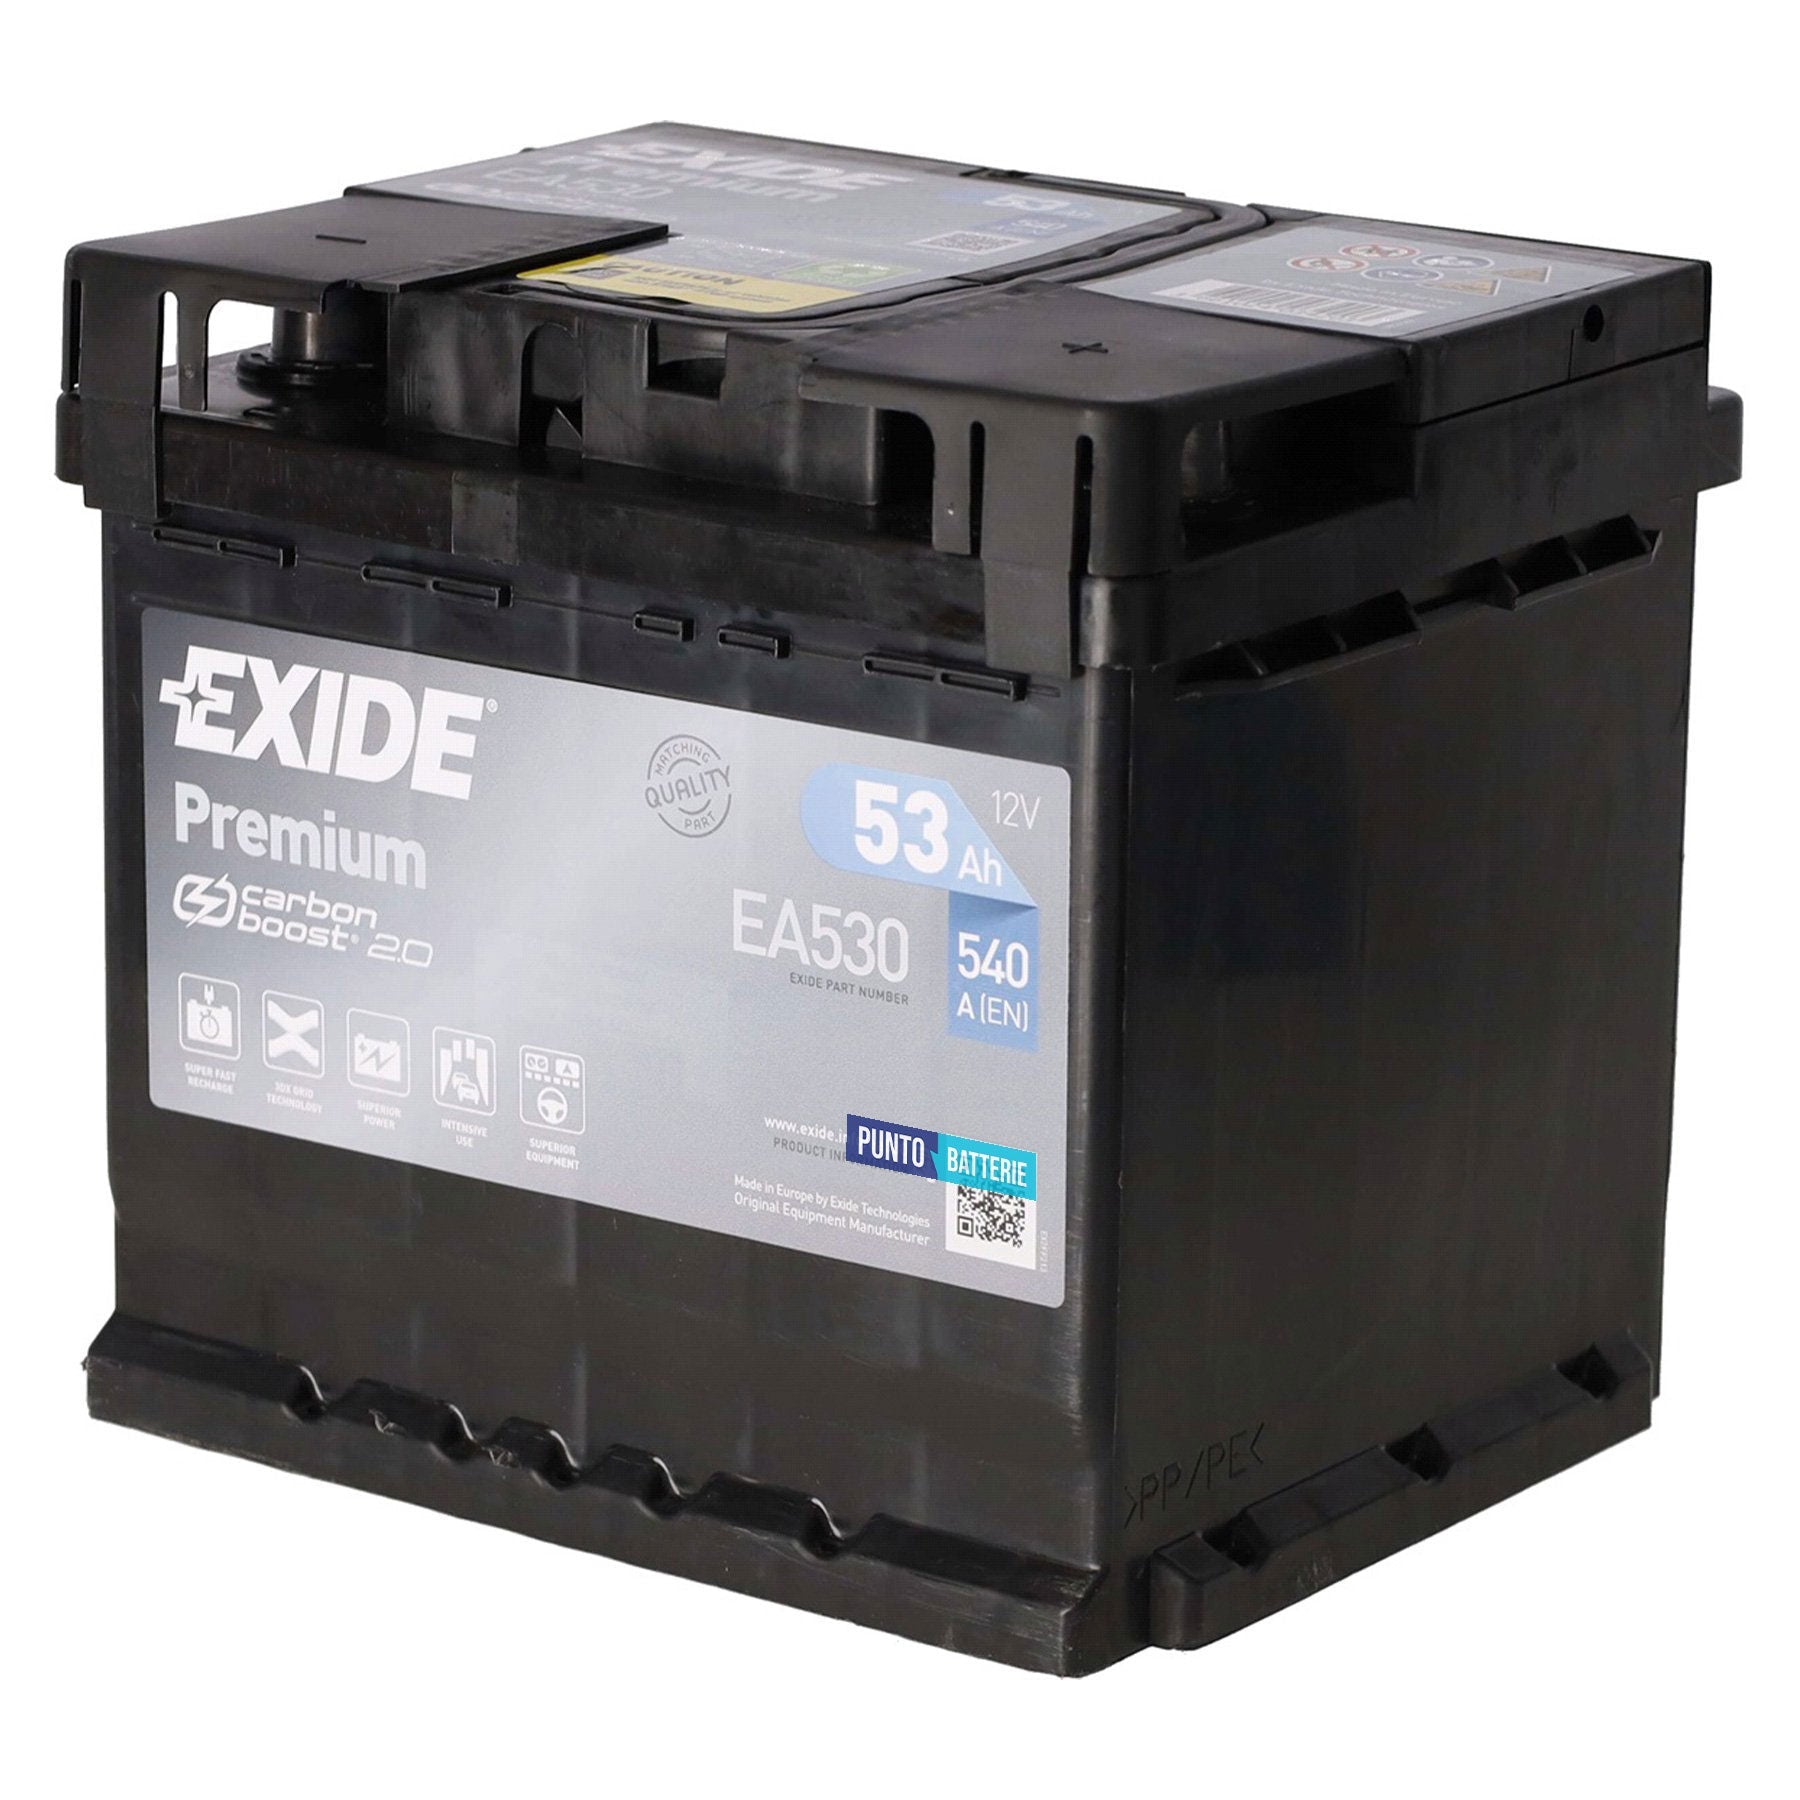 Batteria originale Exide Premium EA530, dimensioni 207 x 175 x 190, polo positivo a destra, 12 volt, 53 amperora, 540 ampere. Batteria per auto e veicoli leggeri.